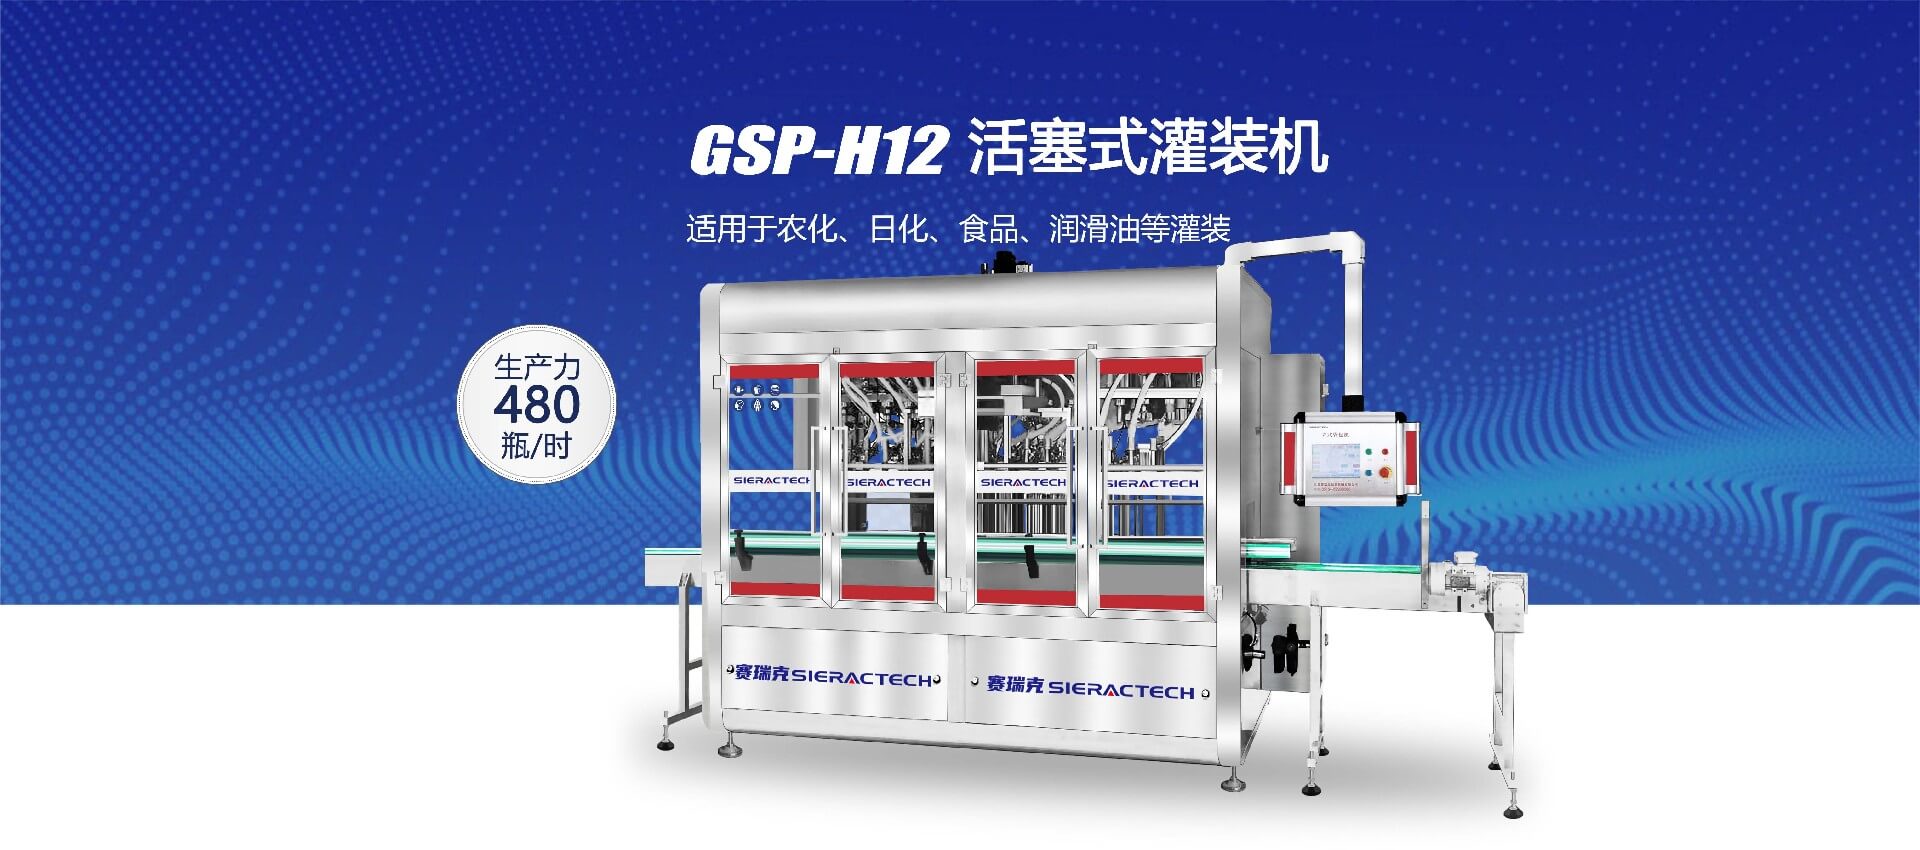 GSP-H12活塞式灌装机